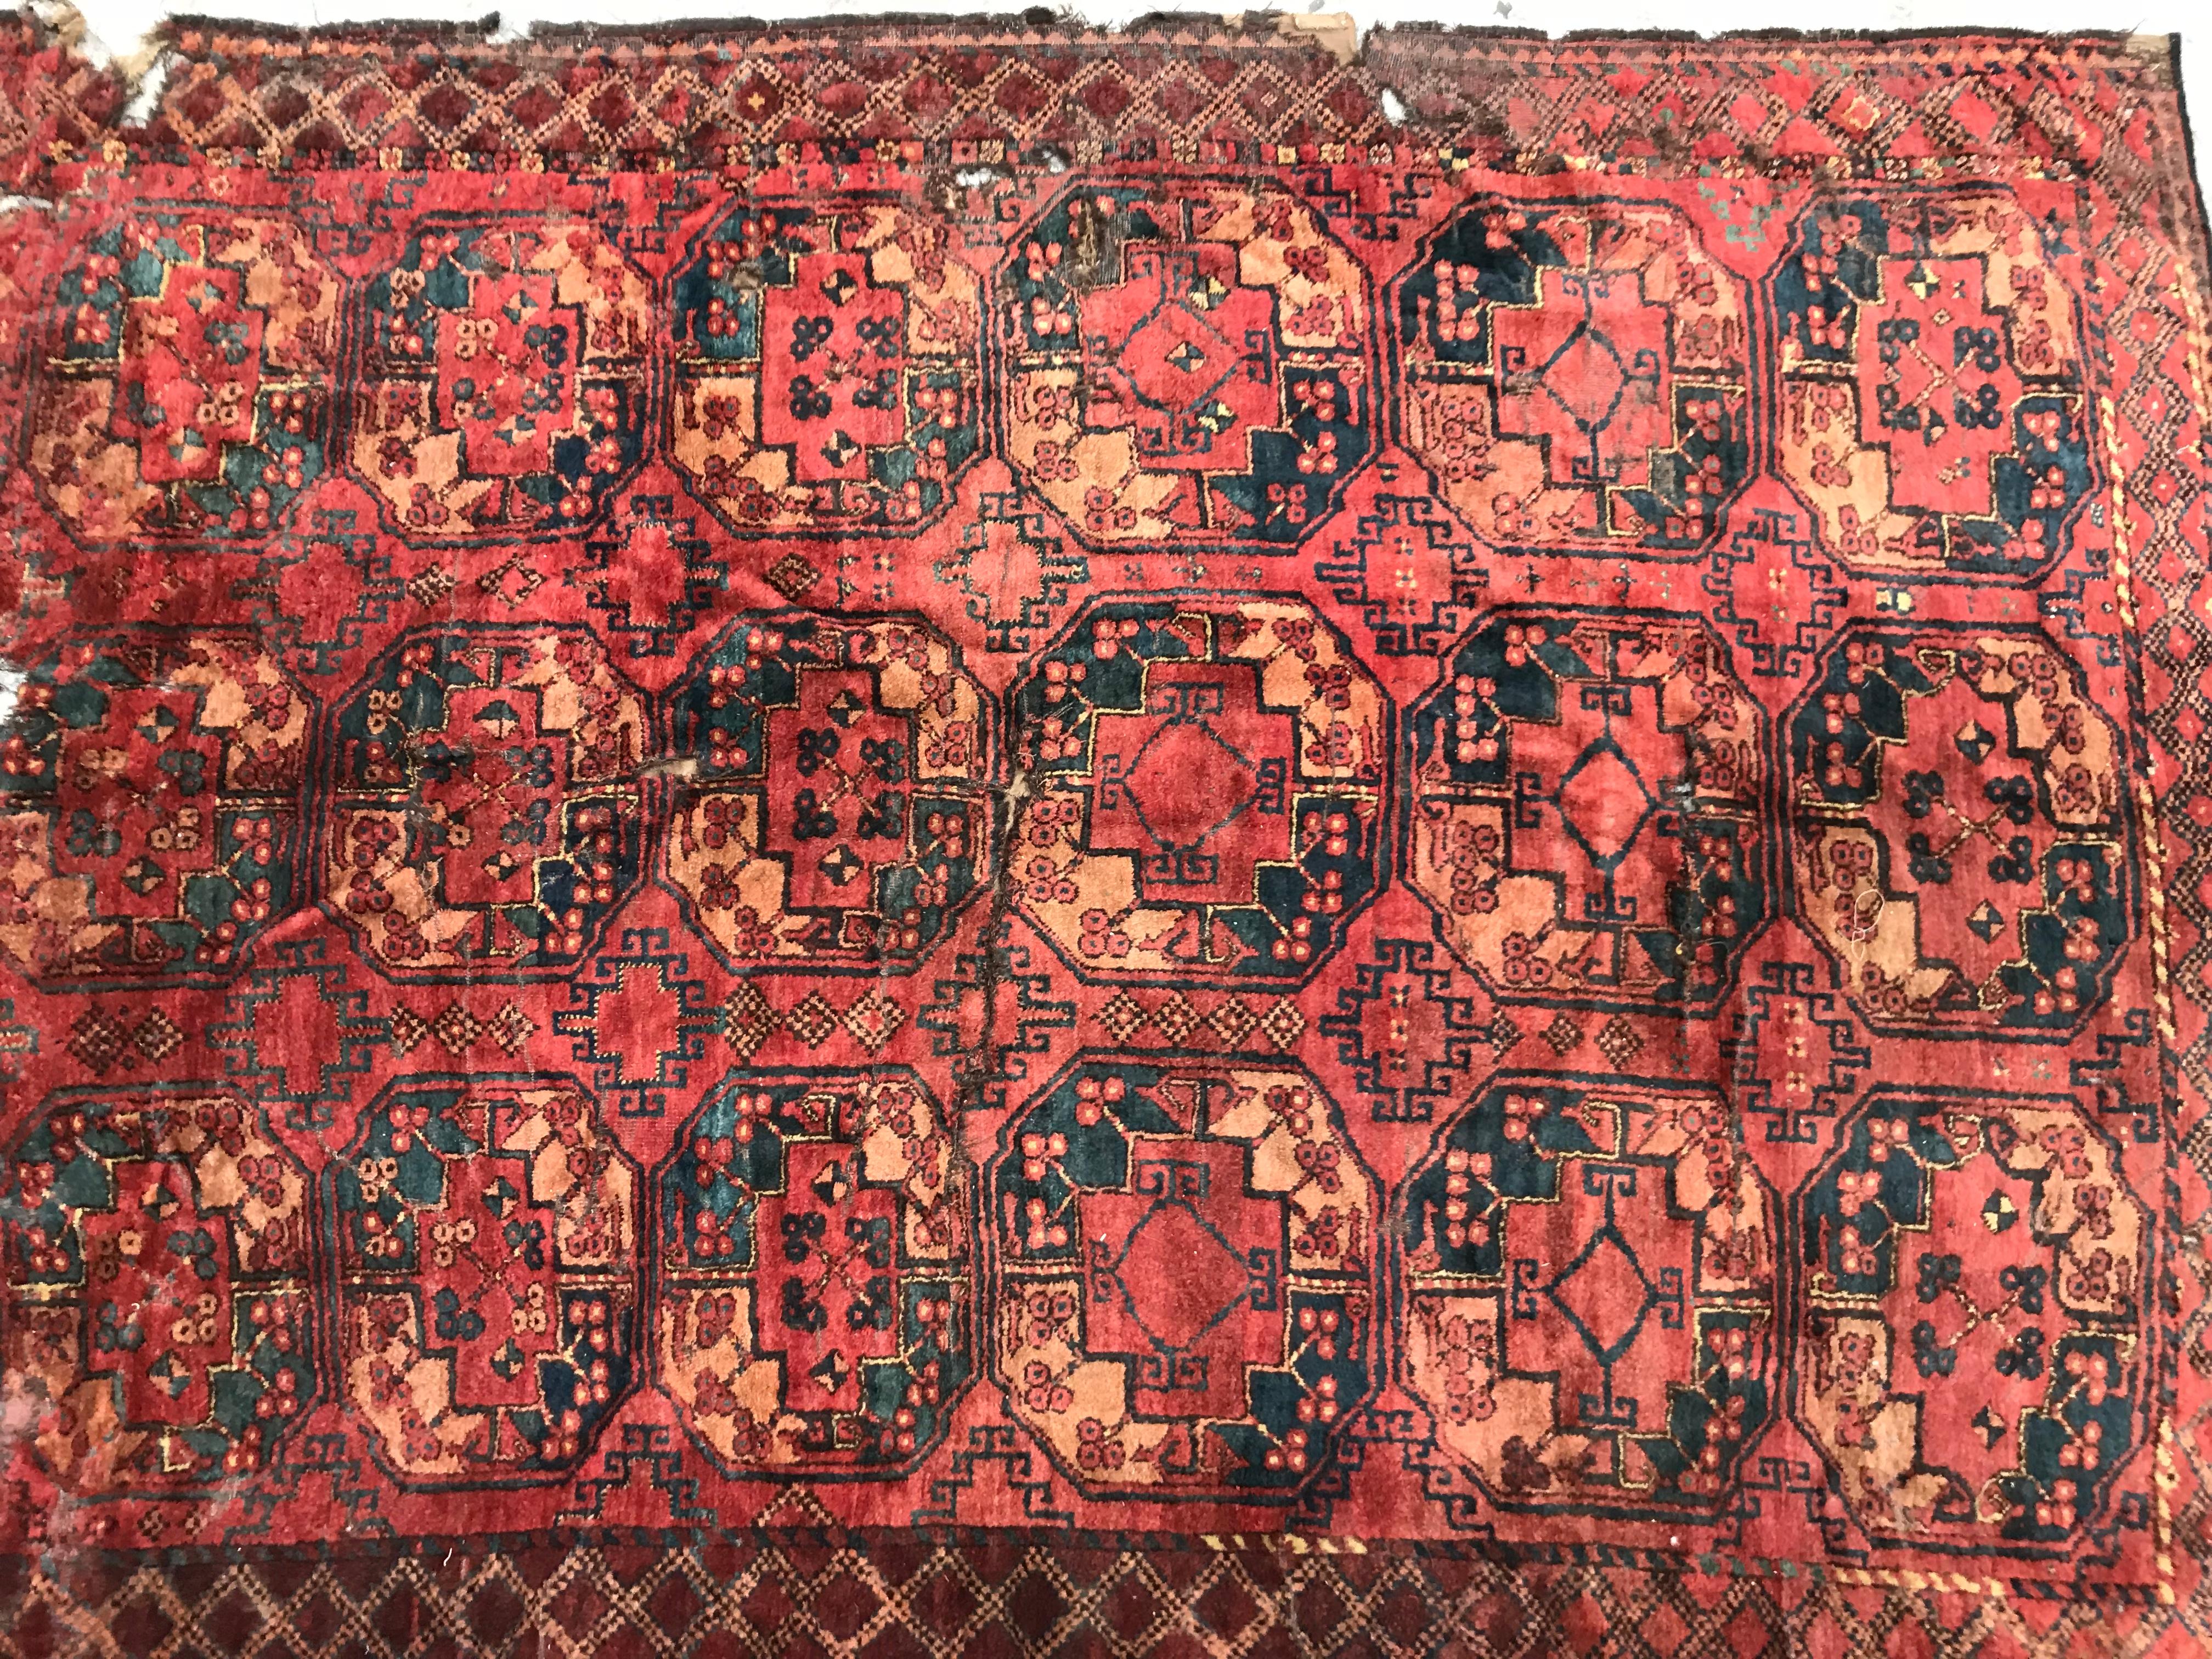 Schöner turkmenischer Ersari-Teppich aus dem 19. Jahrhundert, mit einem typischen geometrischen turkmenischen Gul-Muster und schönen natürlichen Farben in Rot, Orange, Grün, Blau und Violett, komplett handgeknüpft mit Wollsamt auf Wollfond. Maße: